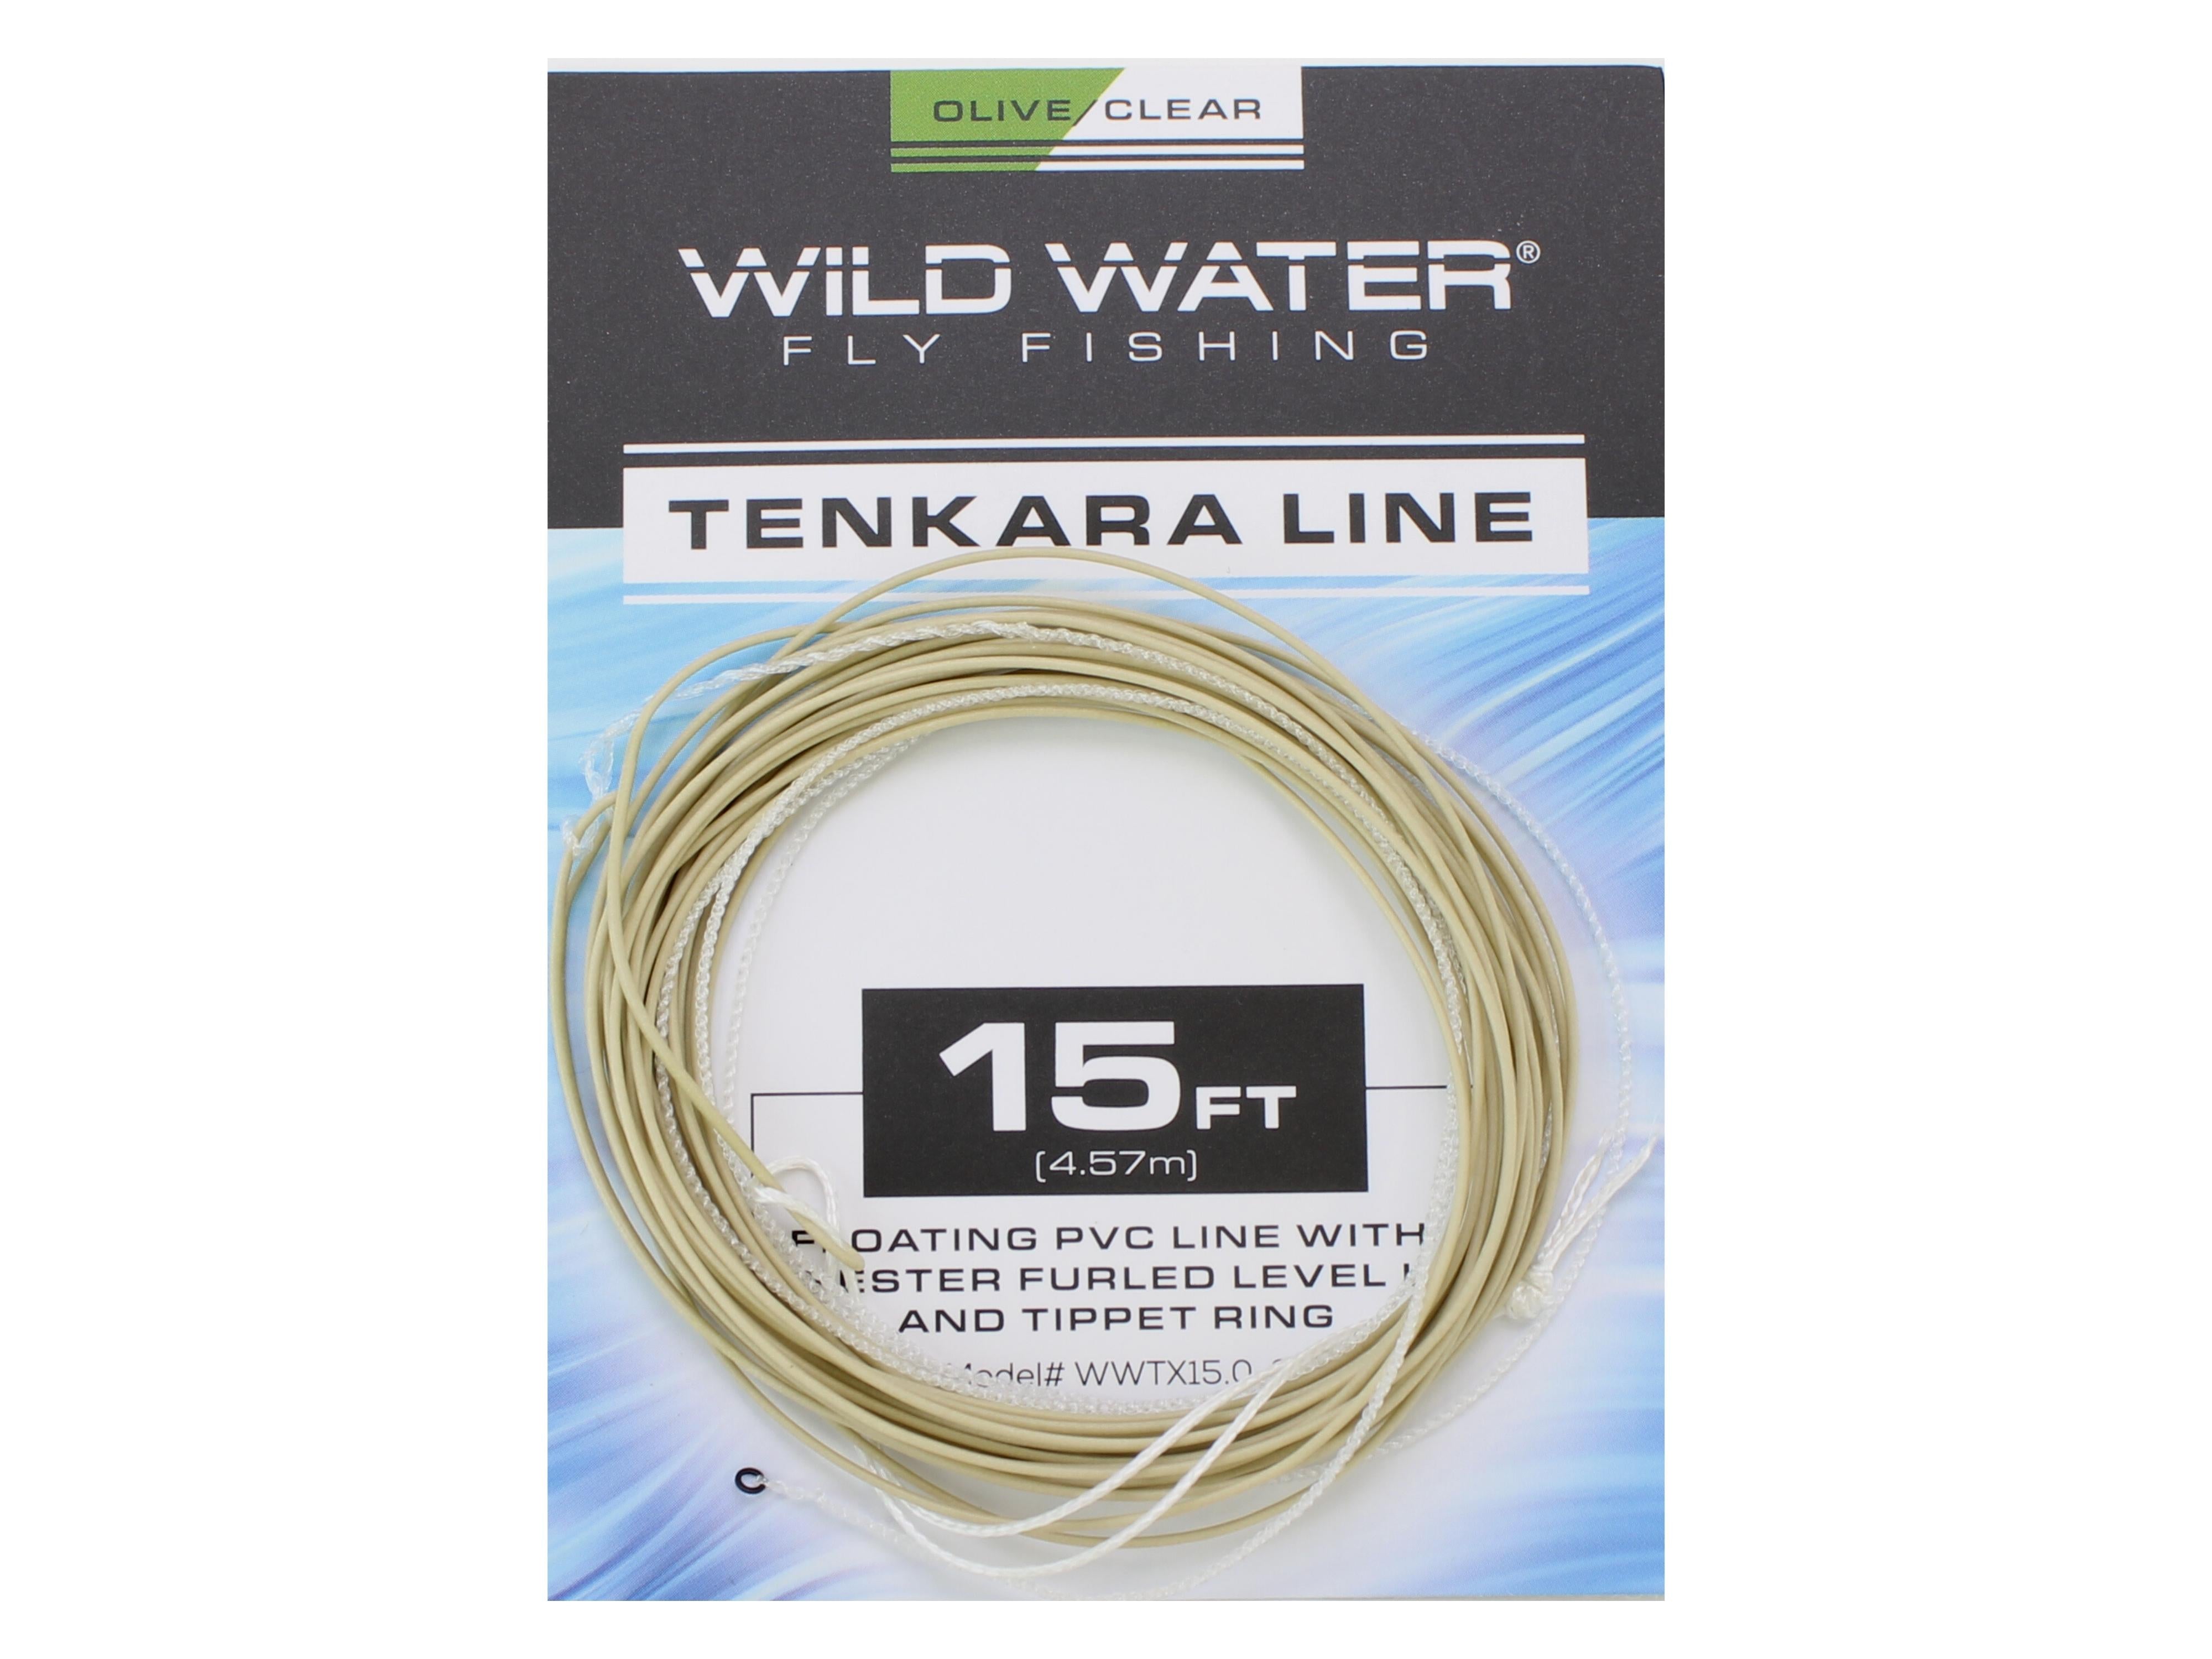 Tippet Rings for Tenkara Fly Fishing 